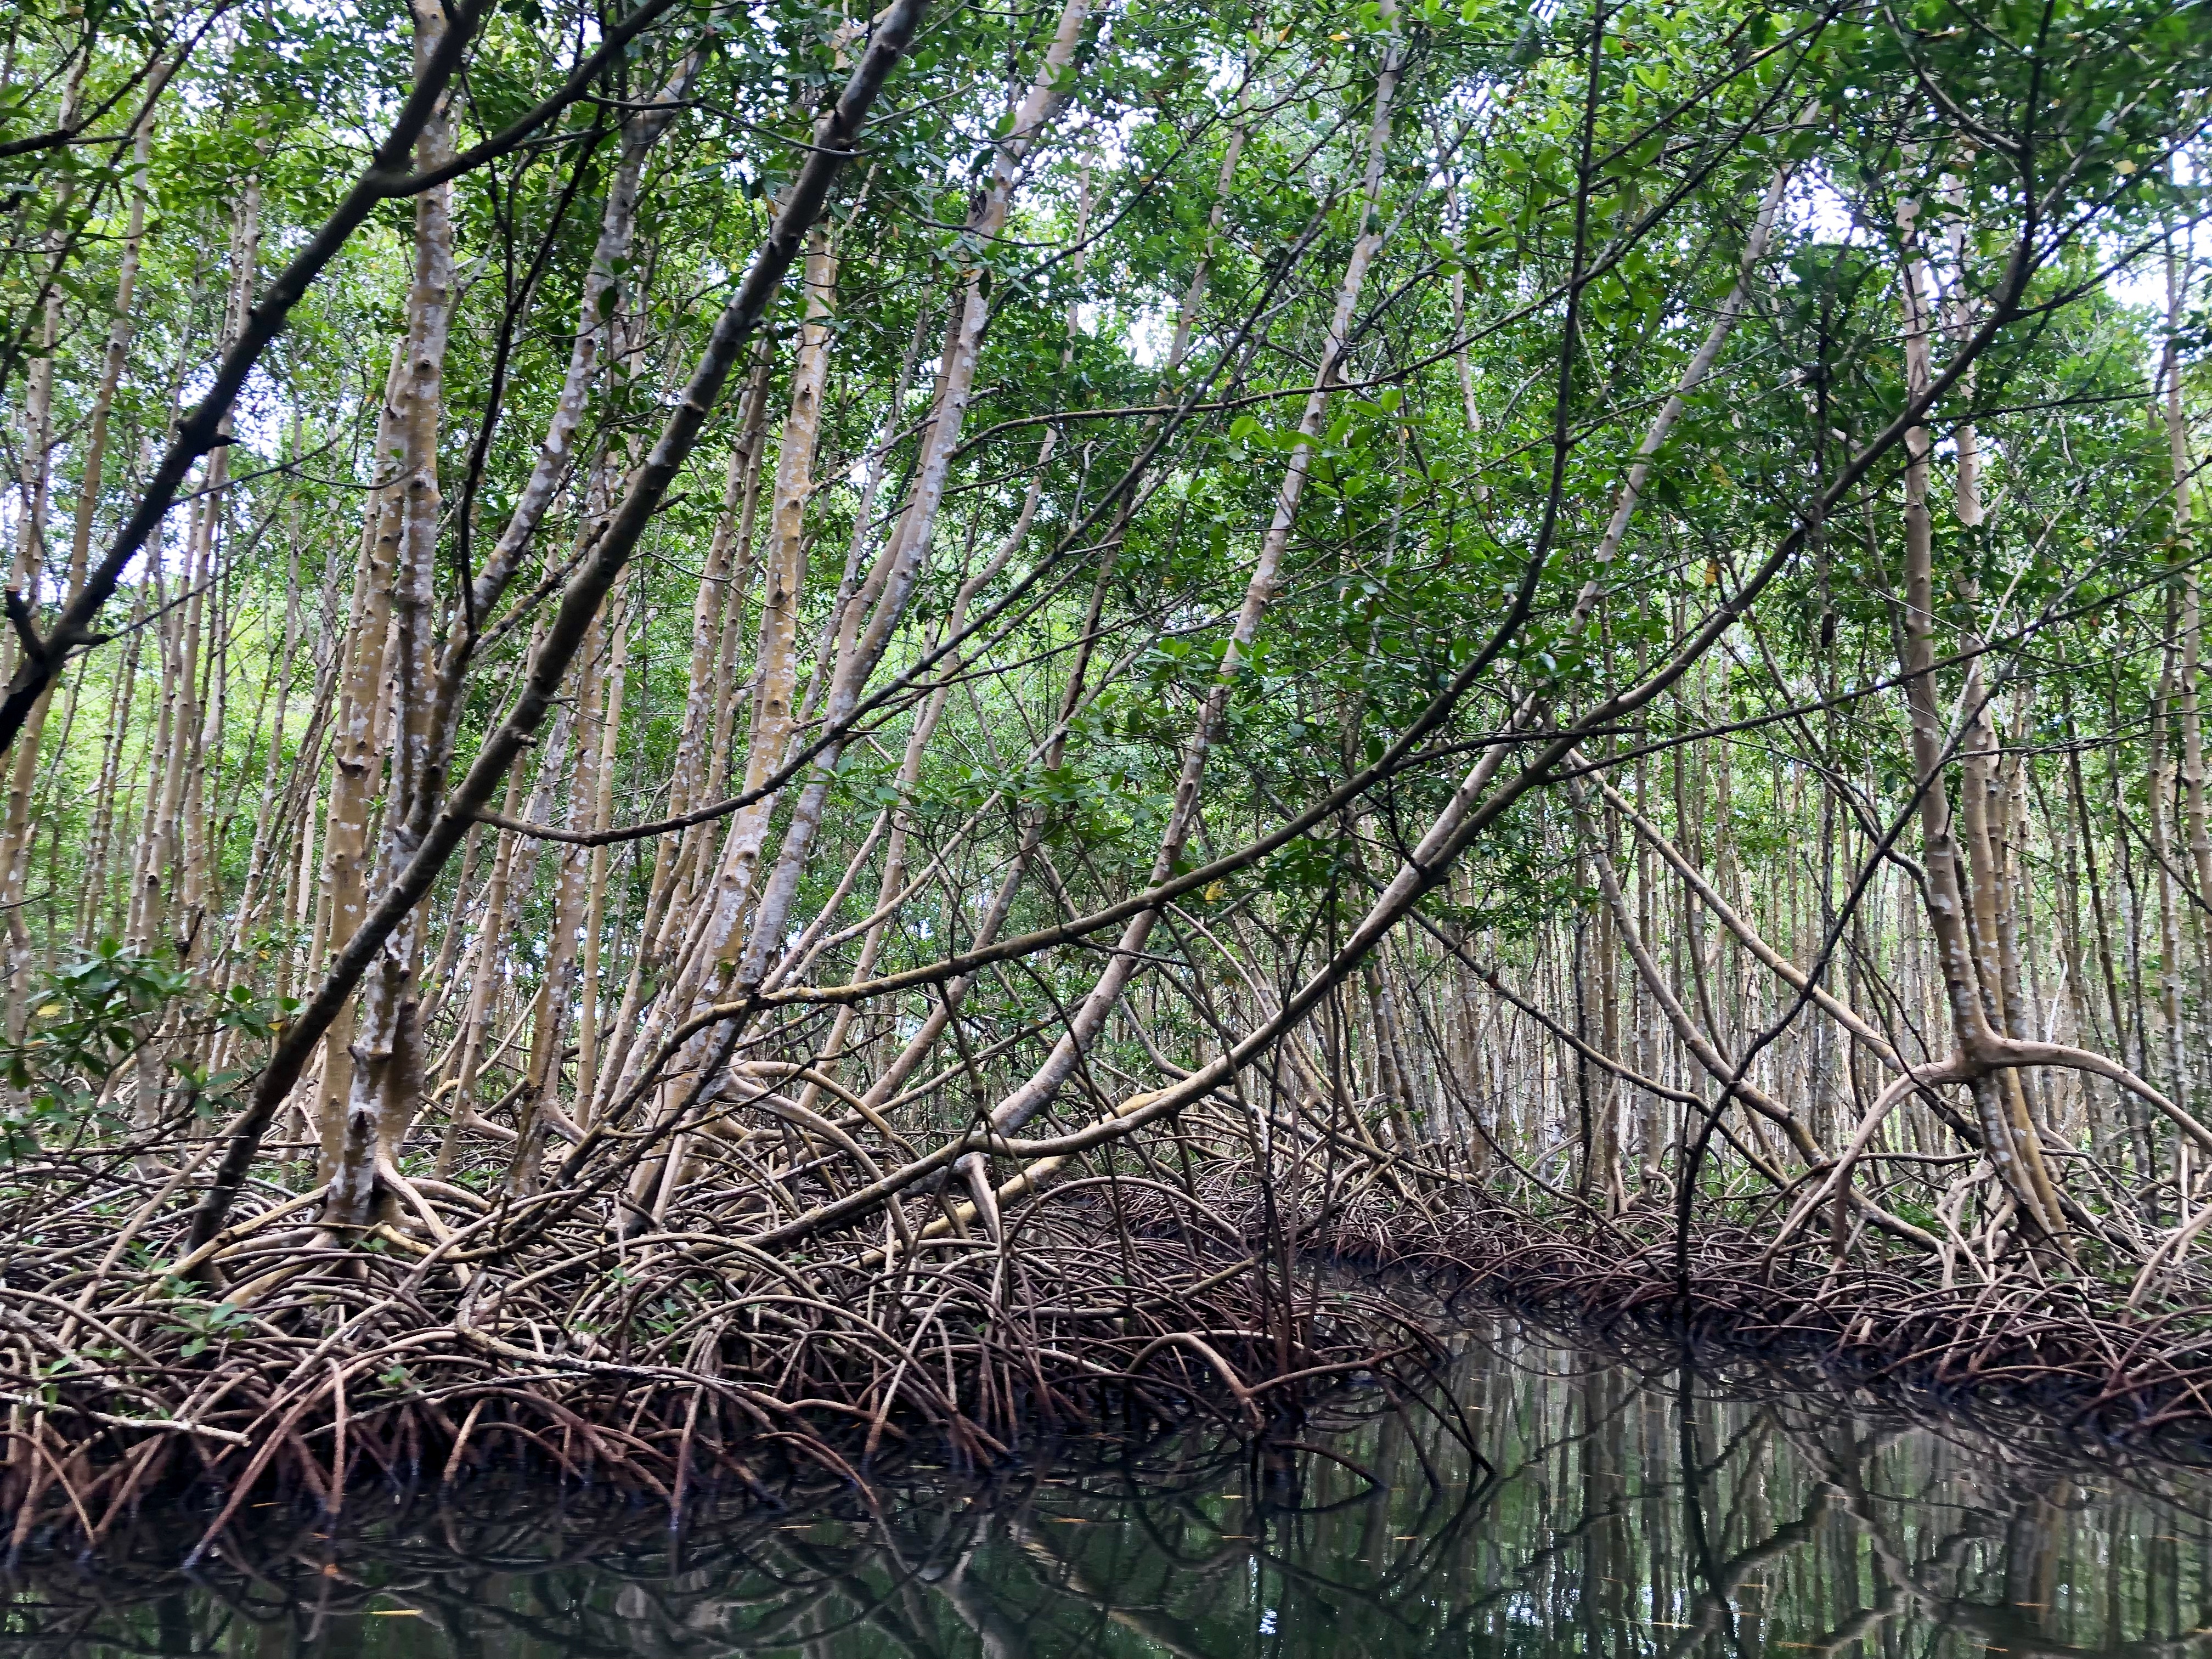     Journée internationale pour la protection des mangroves !

